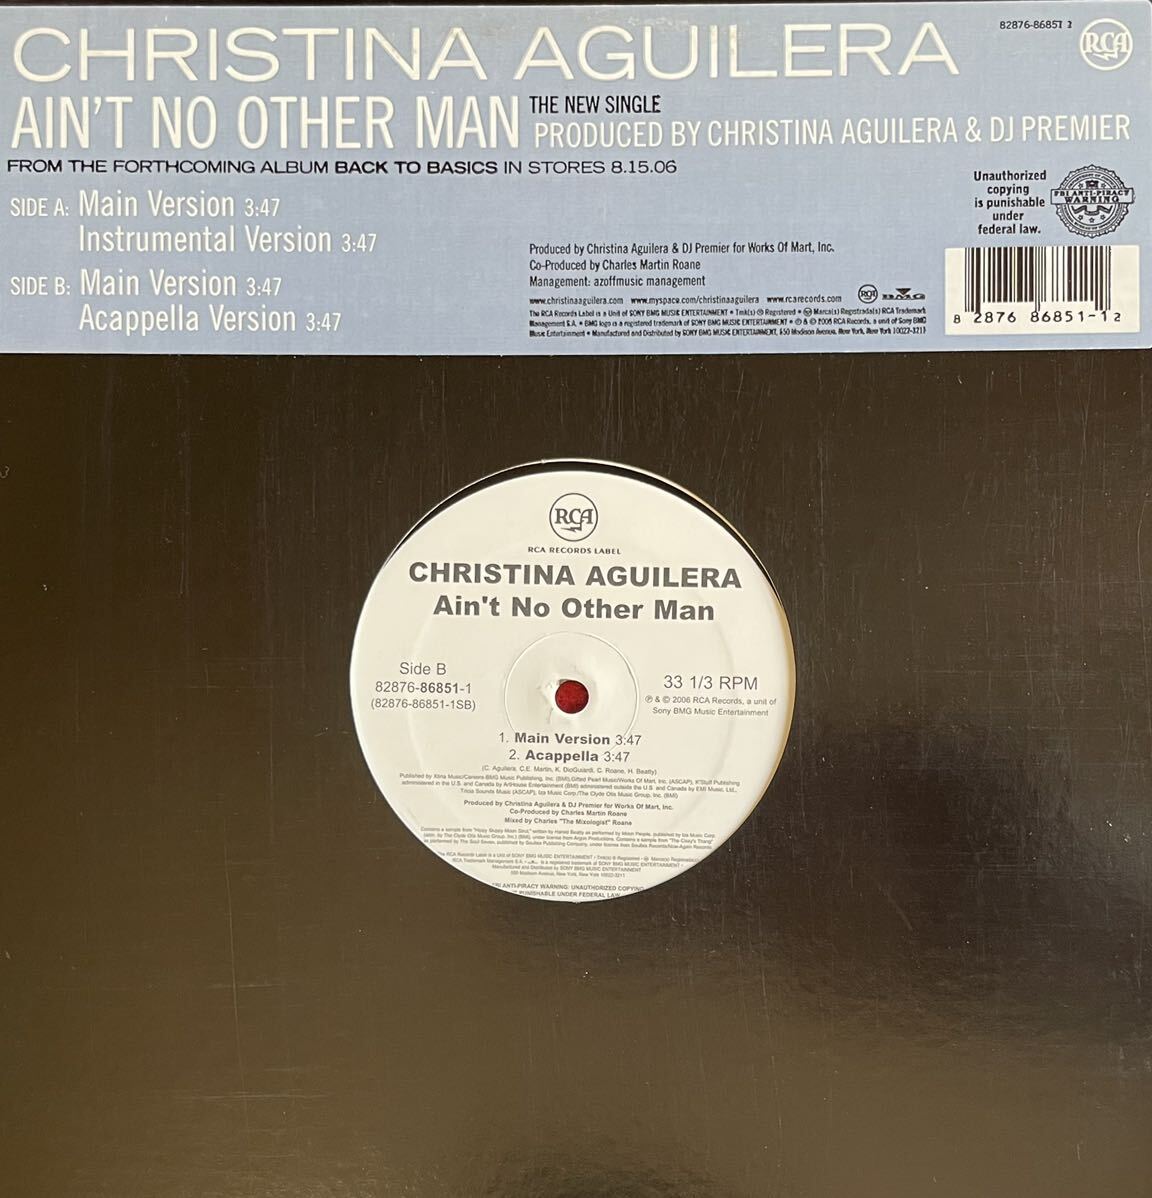 クリスティーナ・アギレラの大ヒットAin’t No Other Man 12inch盤その他にもプロモーション盤 レア盤 人気レコード 多数出品。の画像1